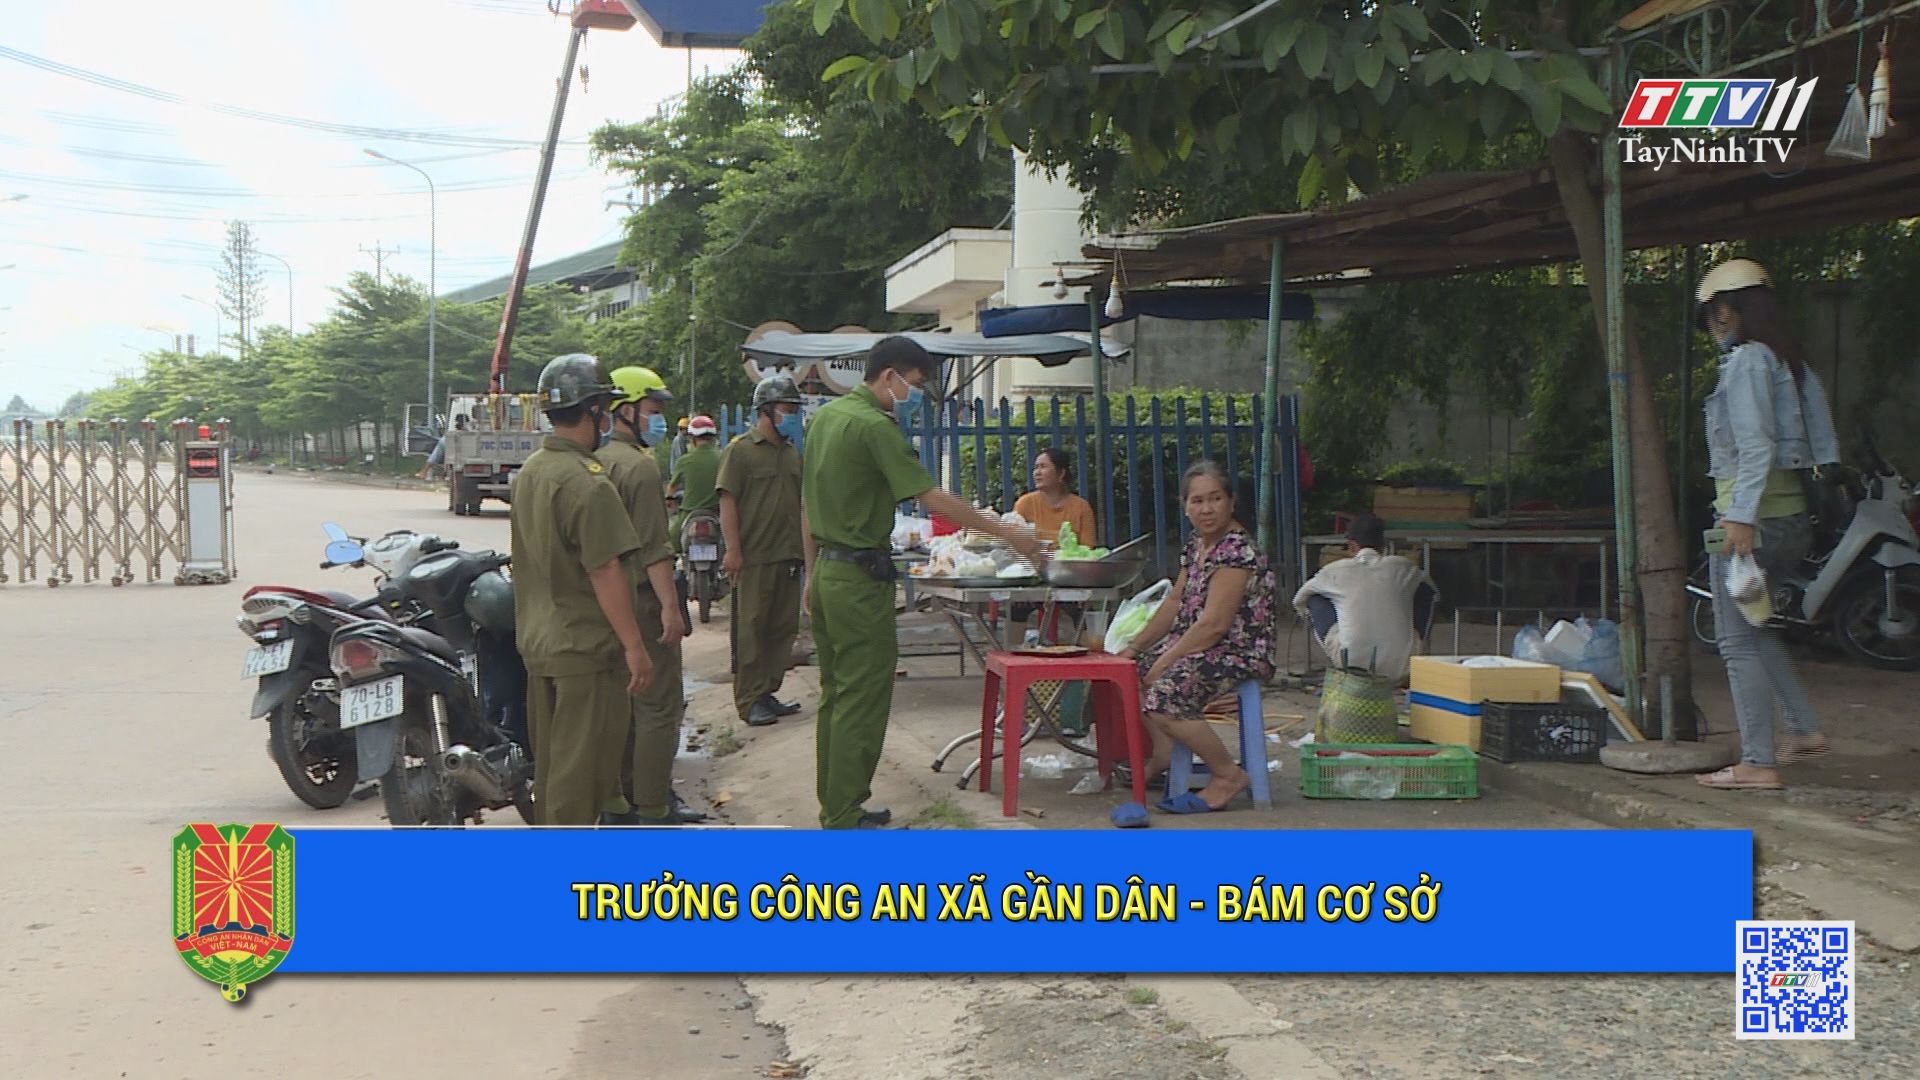 Trưởng Công an xã gần dân, bám cơ sở | An ninh Tây Ninh | TayNinhTV